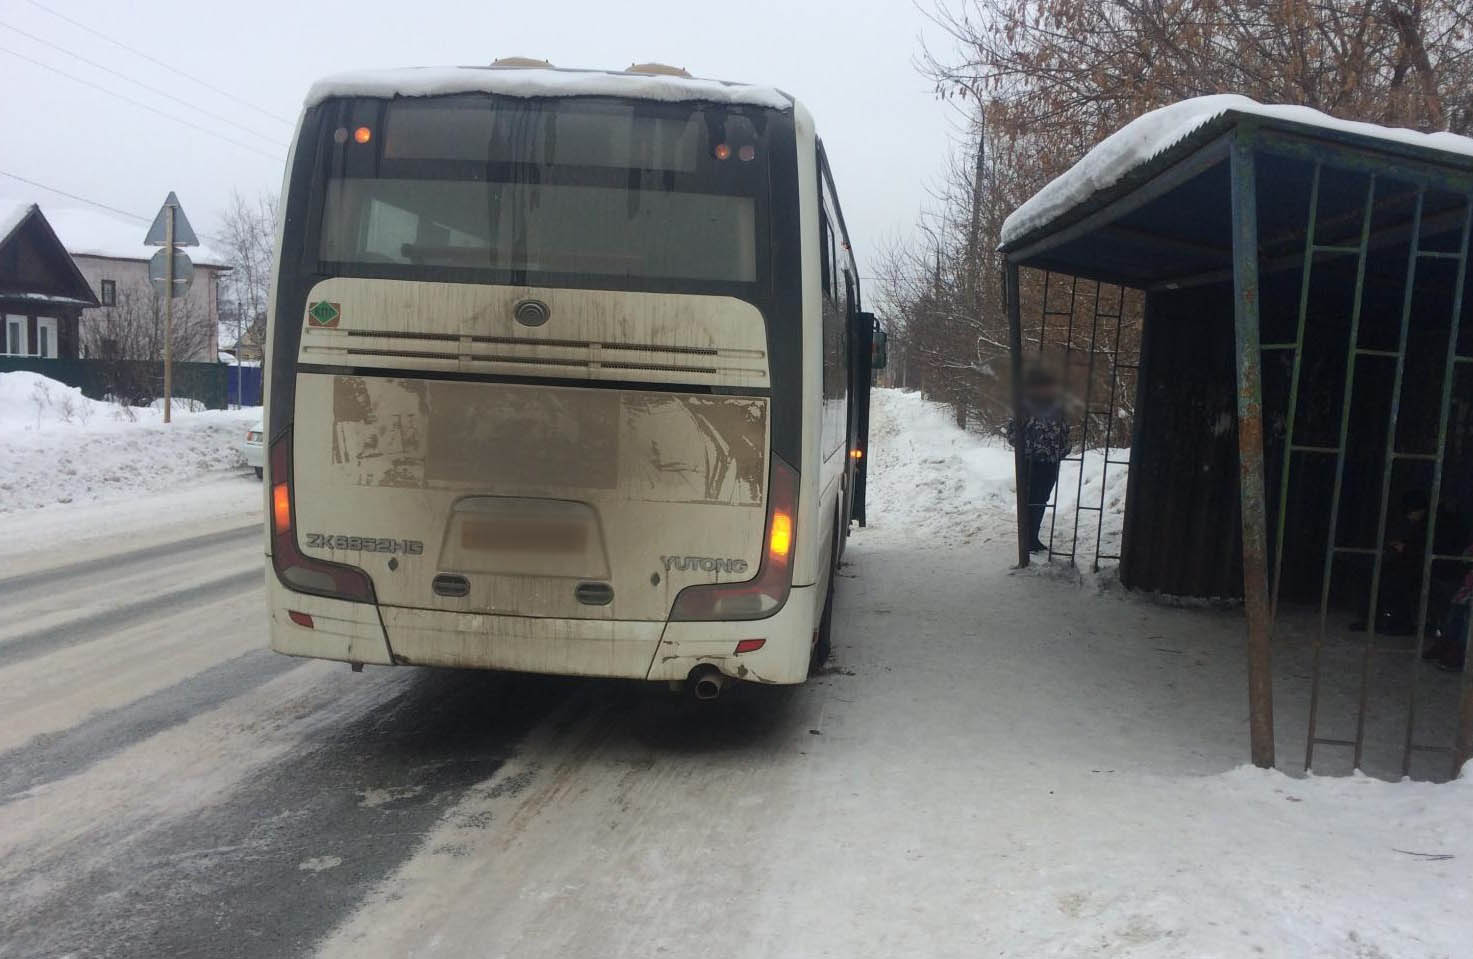 

Автобус в Воткинске сбил школьника на остановке

